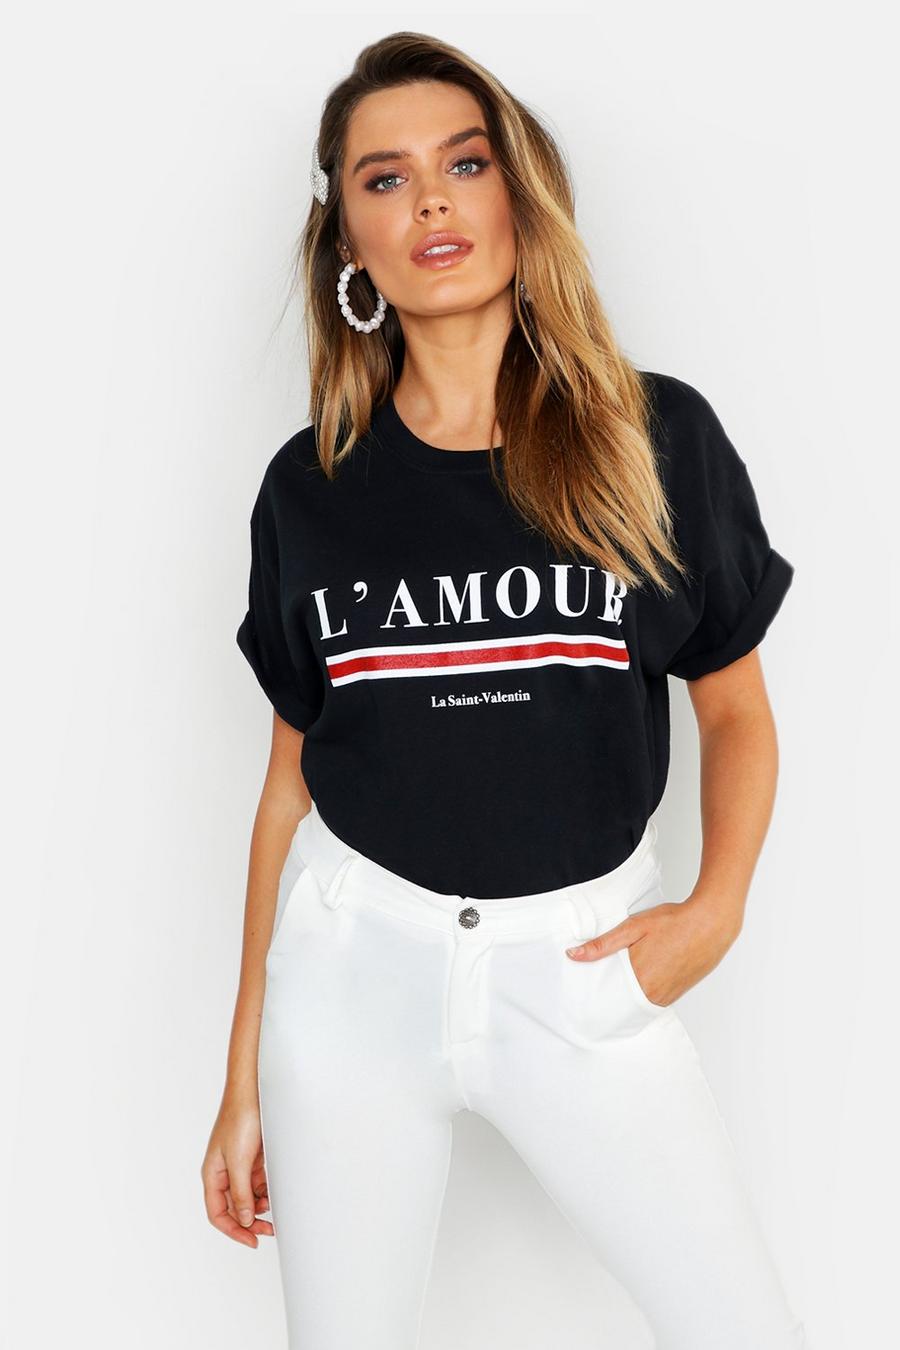 T-Shirt mit L'Amour Slogan, Schwarz black